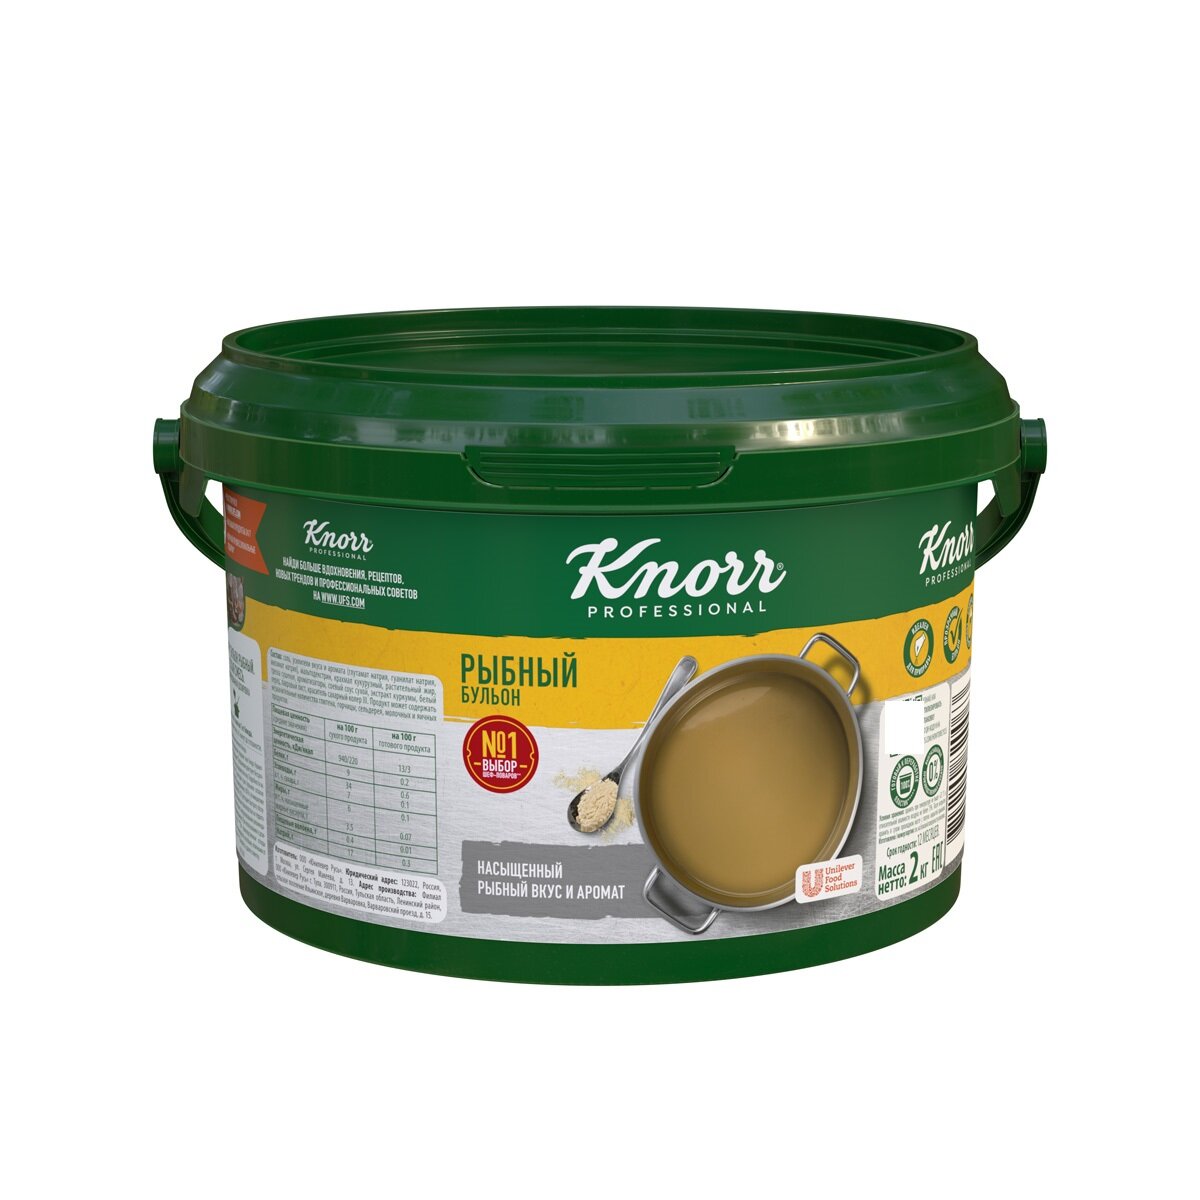 Бульон рыбный 2 кг Knorr professional сухая смесь, 1 шт